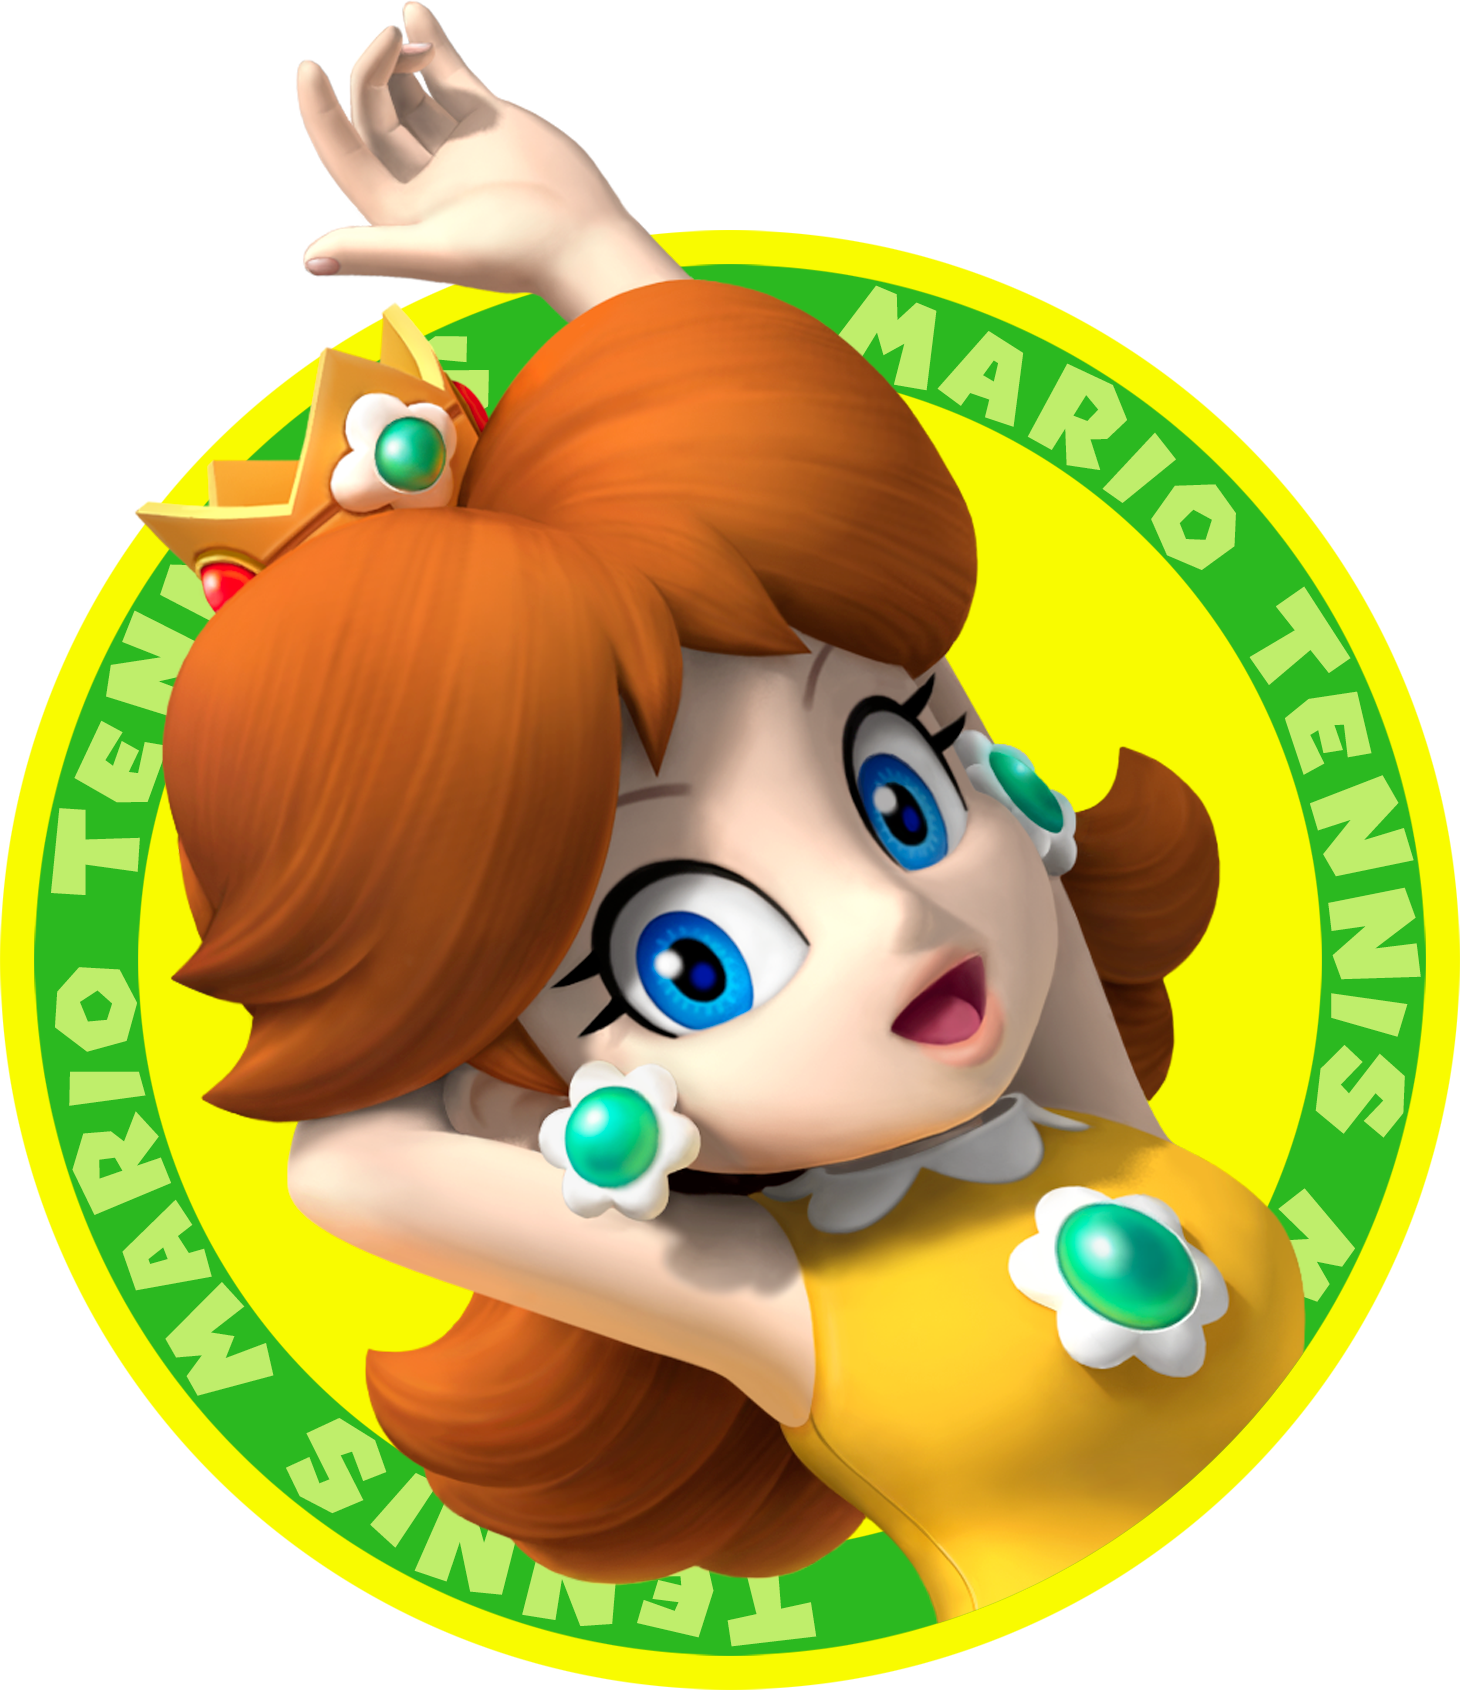 Fileprincess Daisy Mto Icon Artworkpng Super Mario Wiki The Mario Encyclopedia 3661